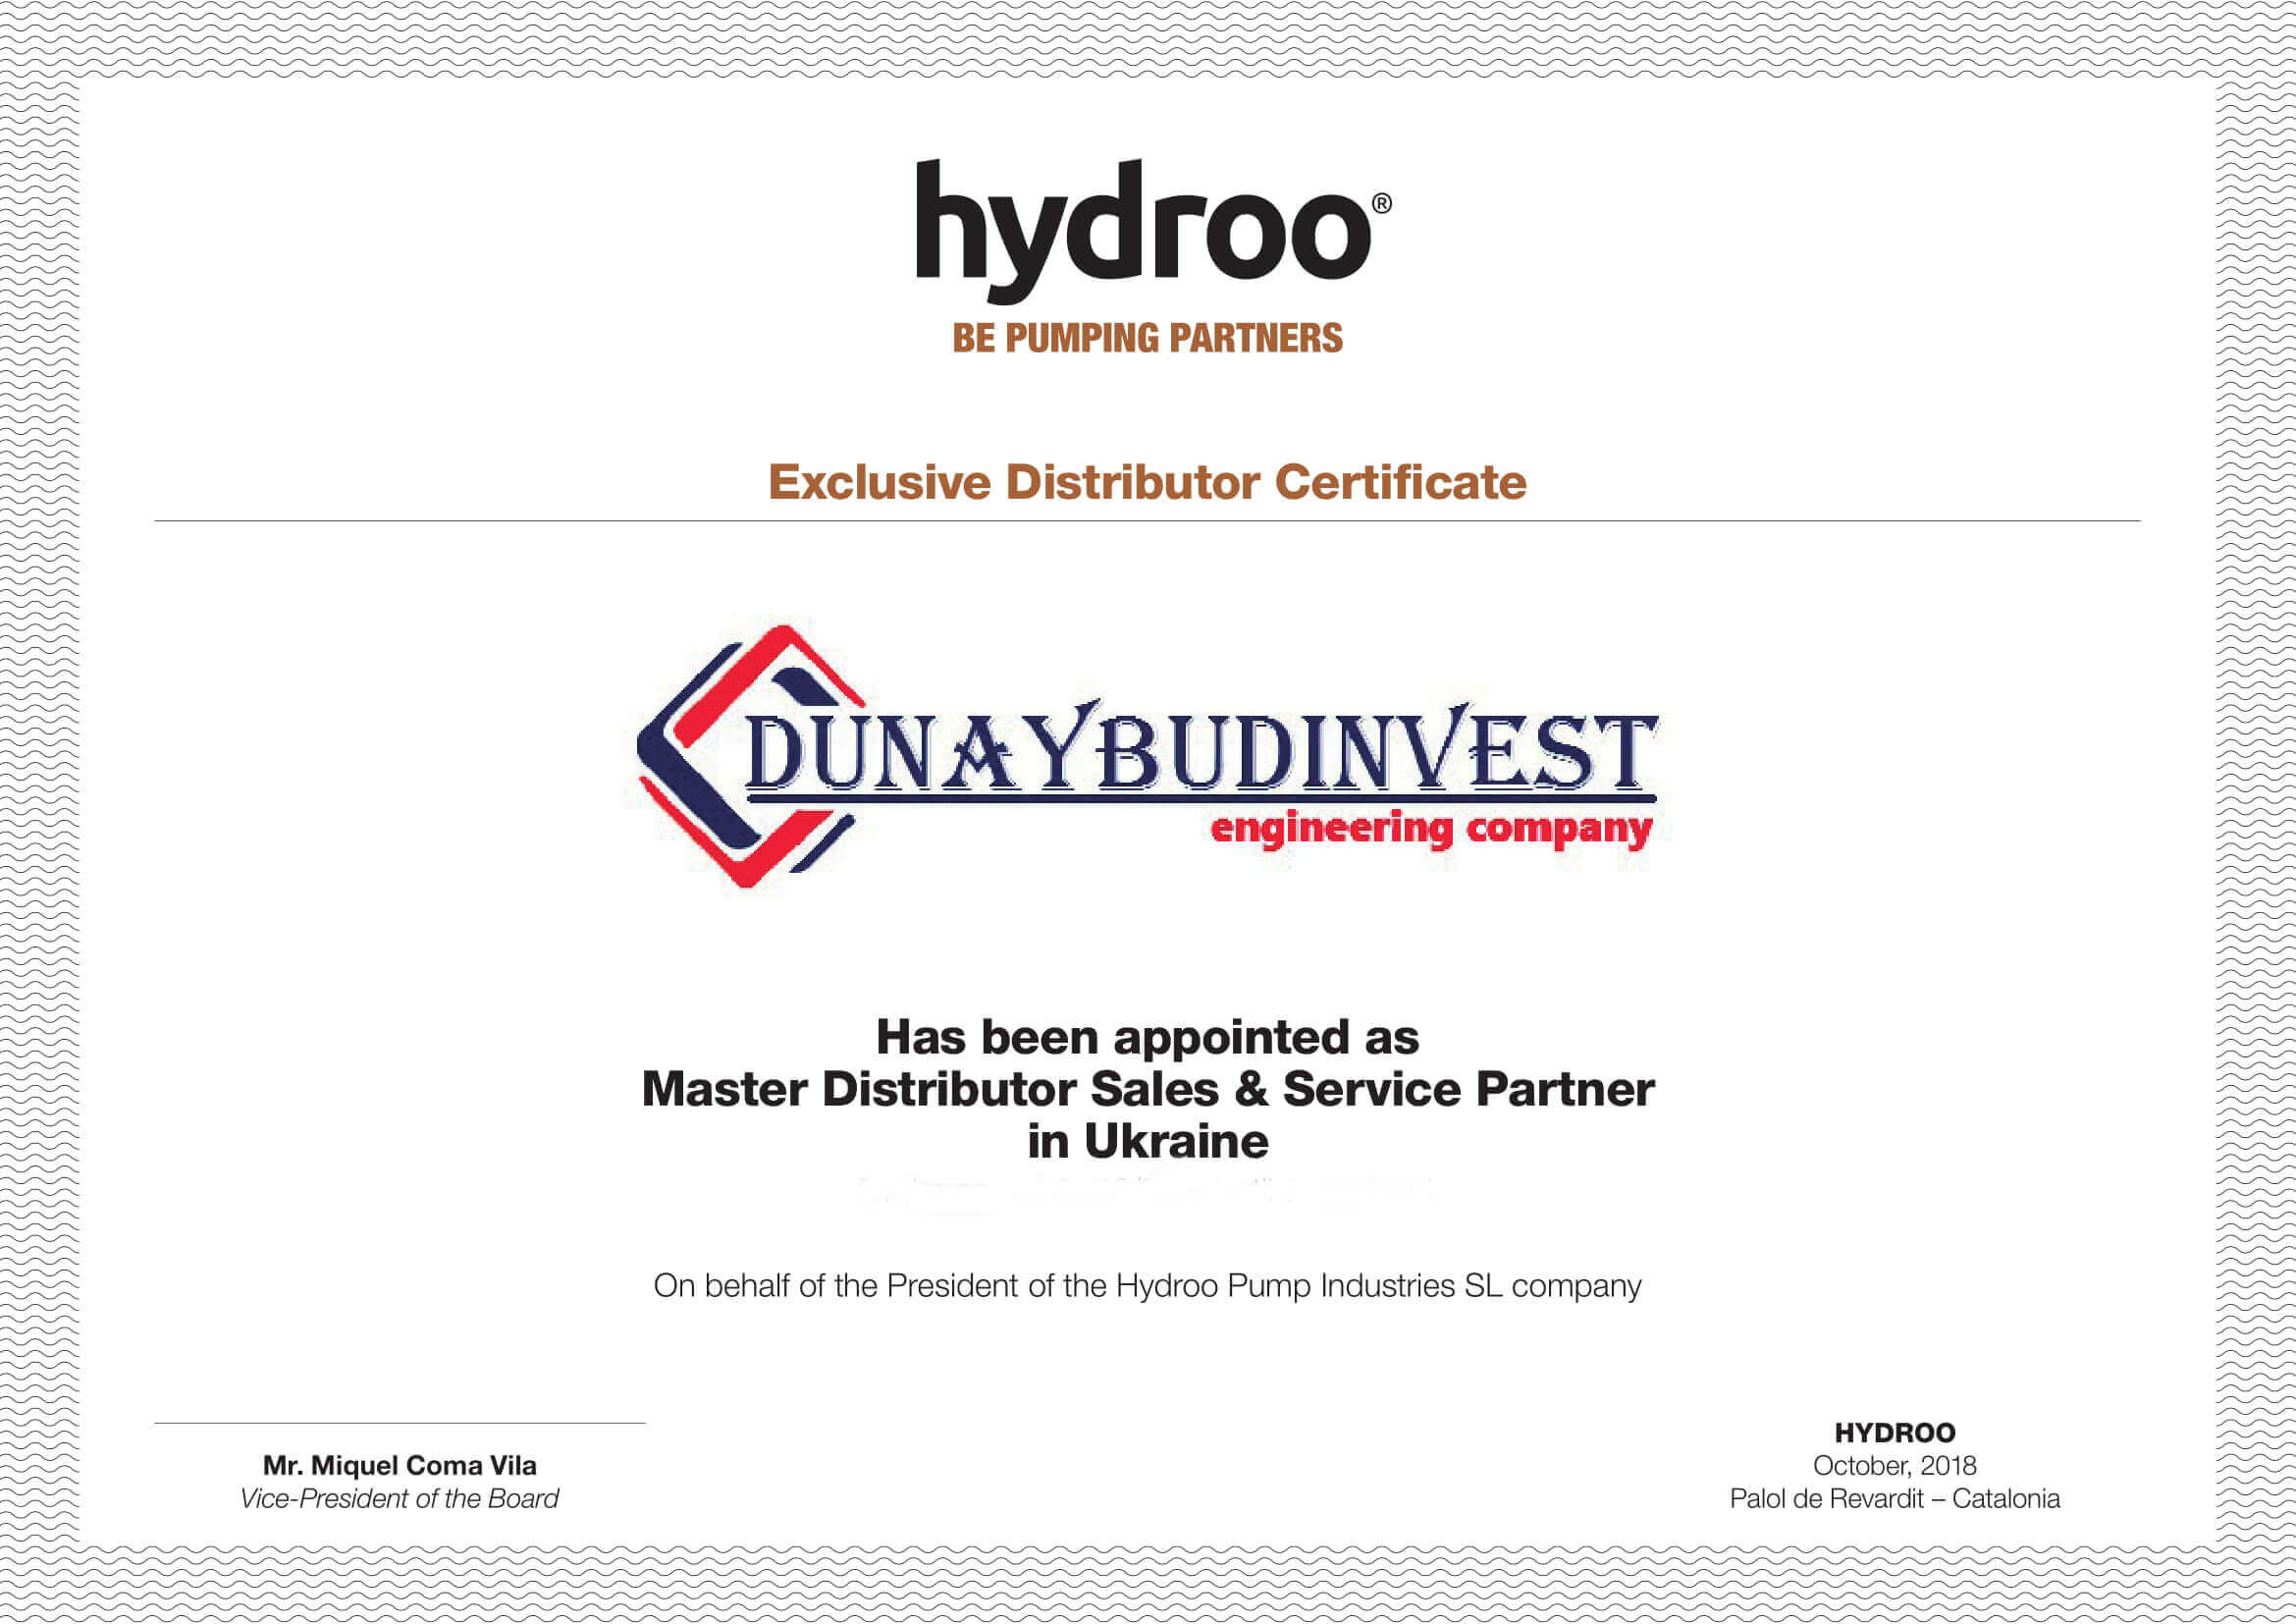 сертификат hydroo дунайбудинвест